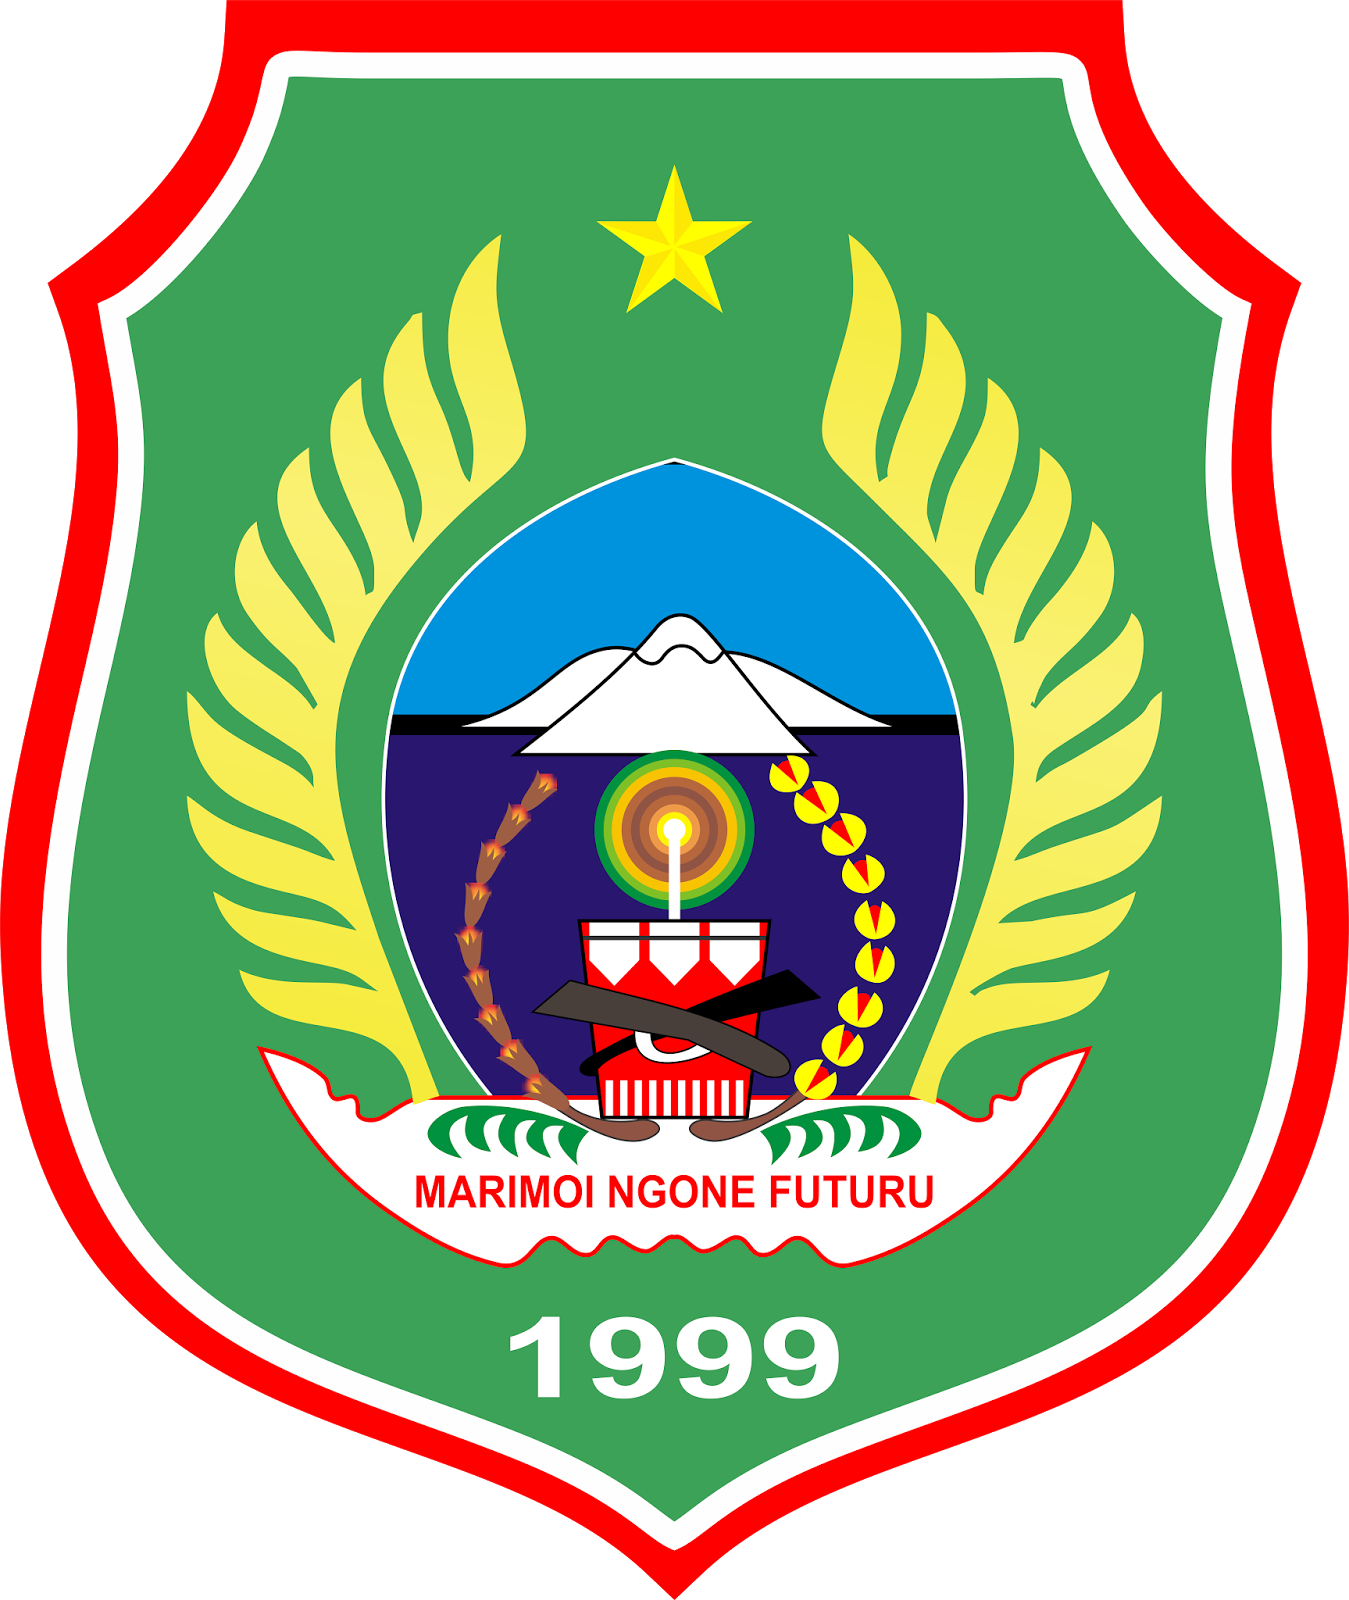 Logo Provinsi Maluku Utara File Cdr Coreldraw - Logo Provinsi Maluku Utara File Cdr Coreldraw (1349x1600)